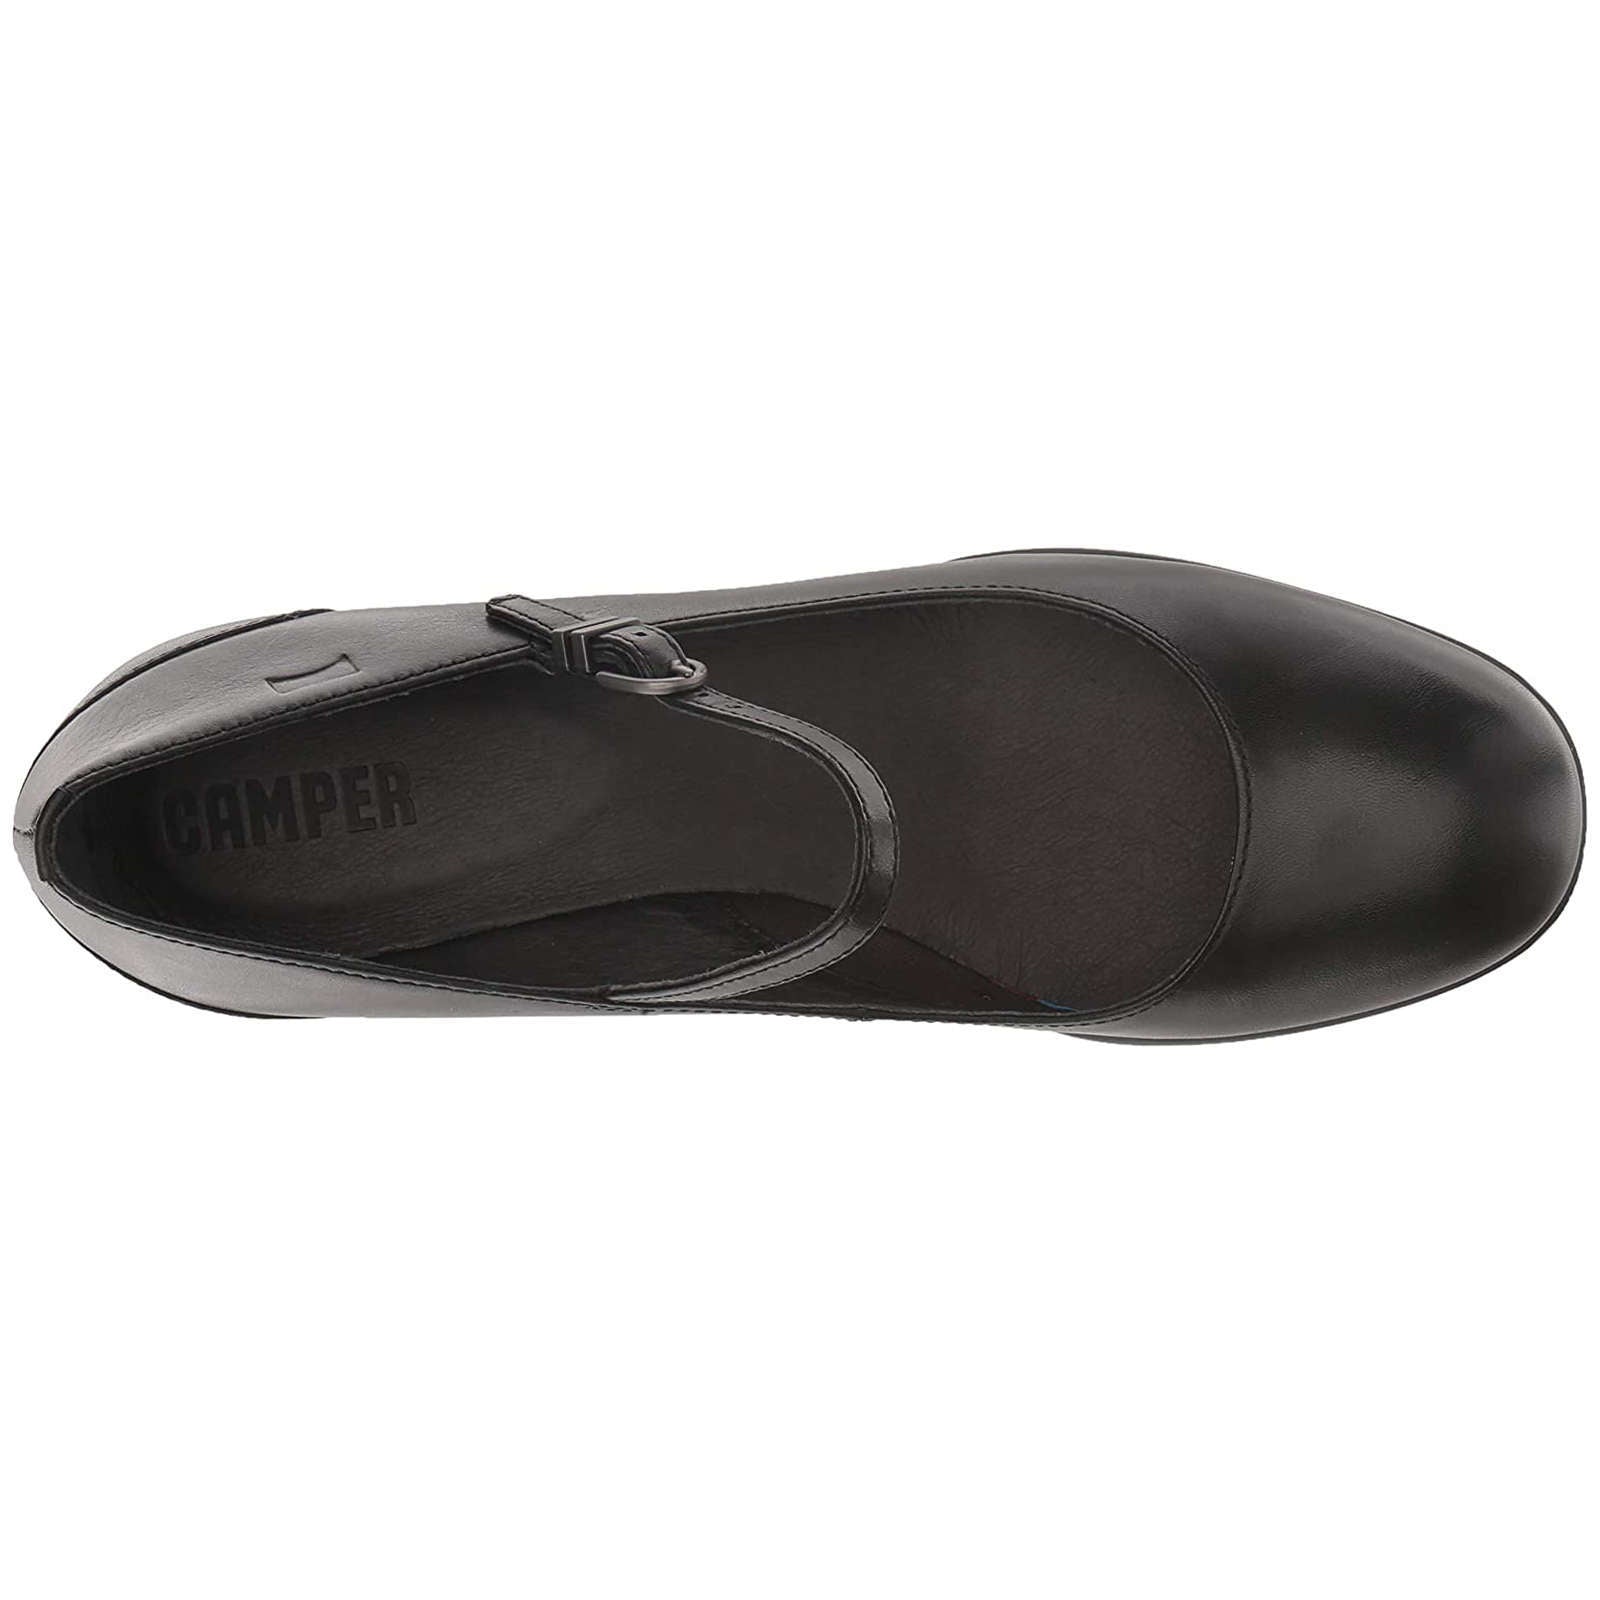 Camper Katie Calfskin Leather Women's Block Heel Shoes#color_black